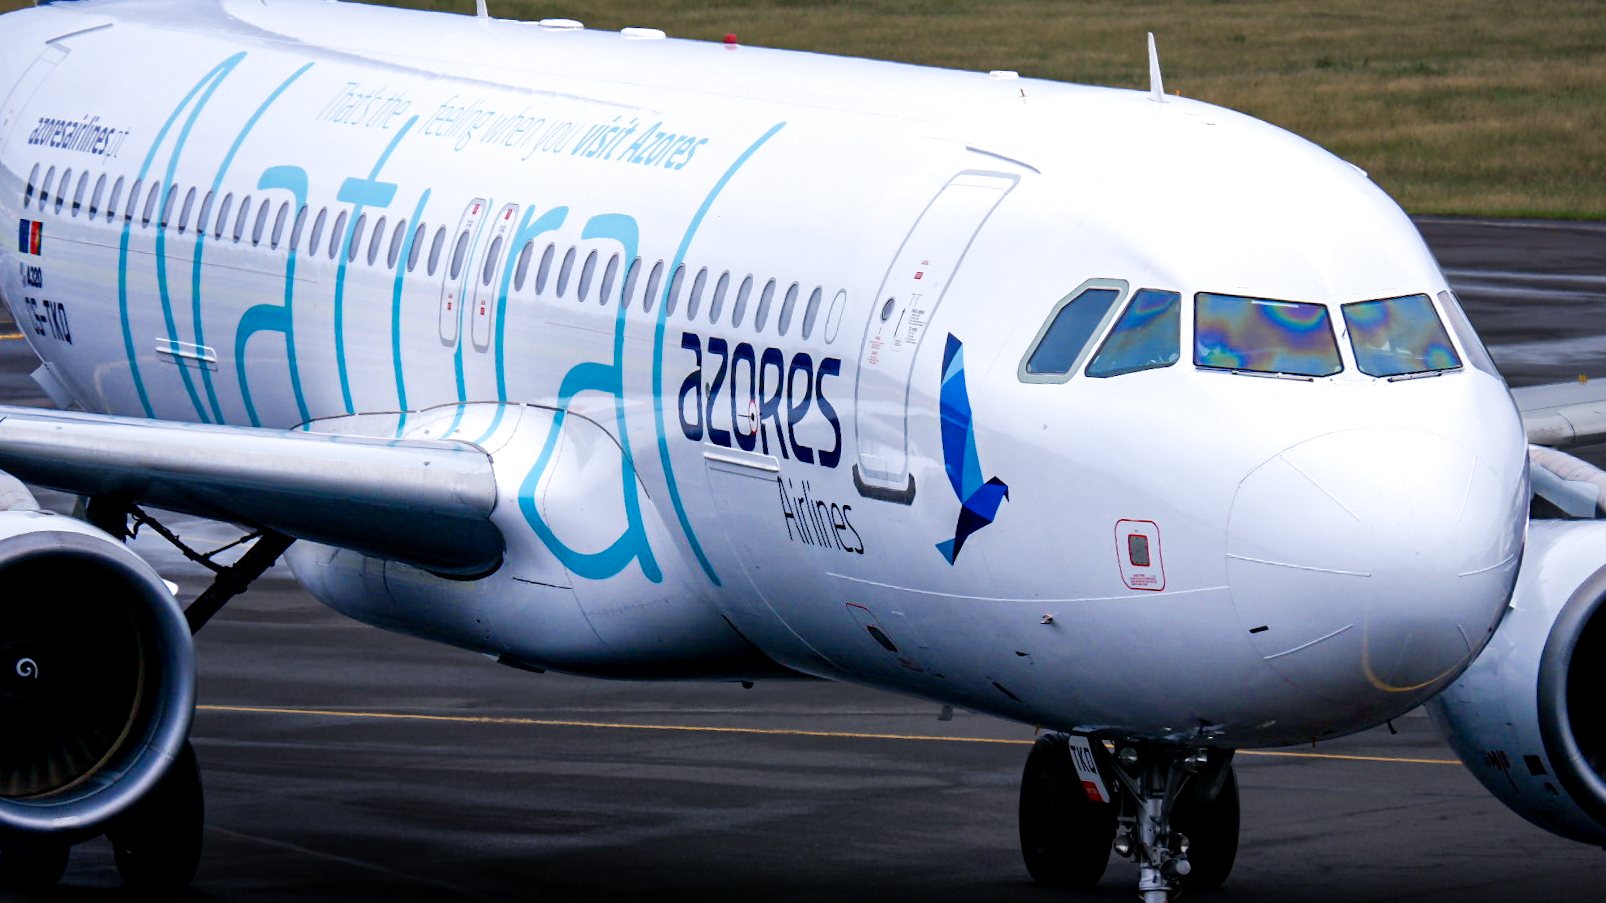 Uma auditoria do Tribunal de Contas ao grupo SATA, divulgada esta quarta-feira, identifica a companhia aérea Azores Airlines como responsável &quot;por cerca de 90% dos prejuízos acumulados entre 2013 e 2019&quot;, no valor de 260 milhões de euros